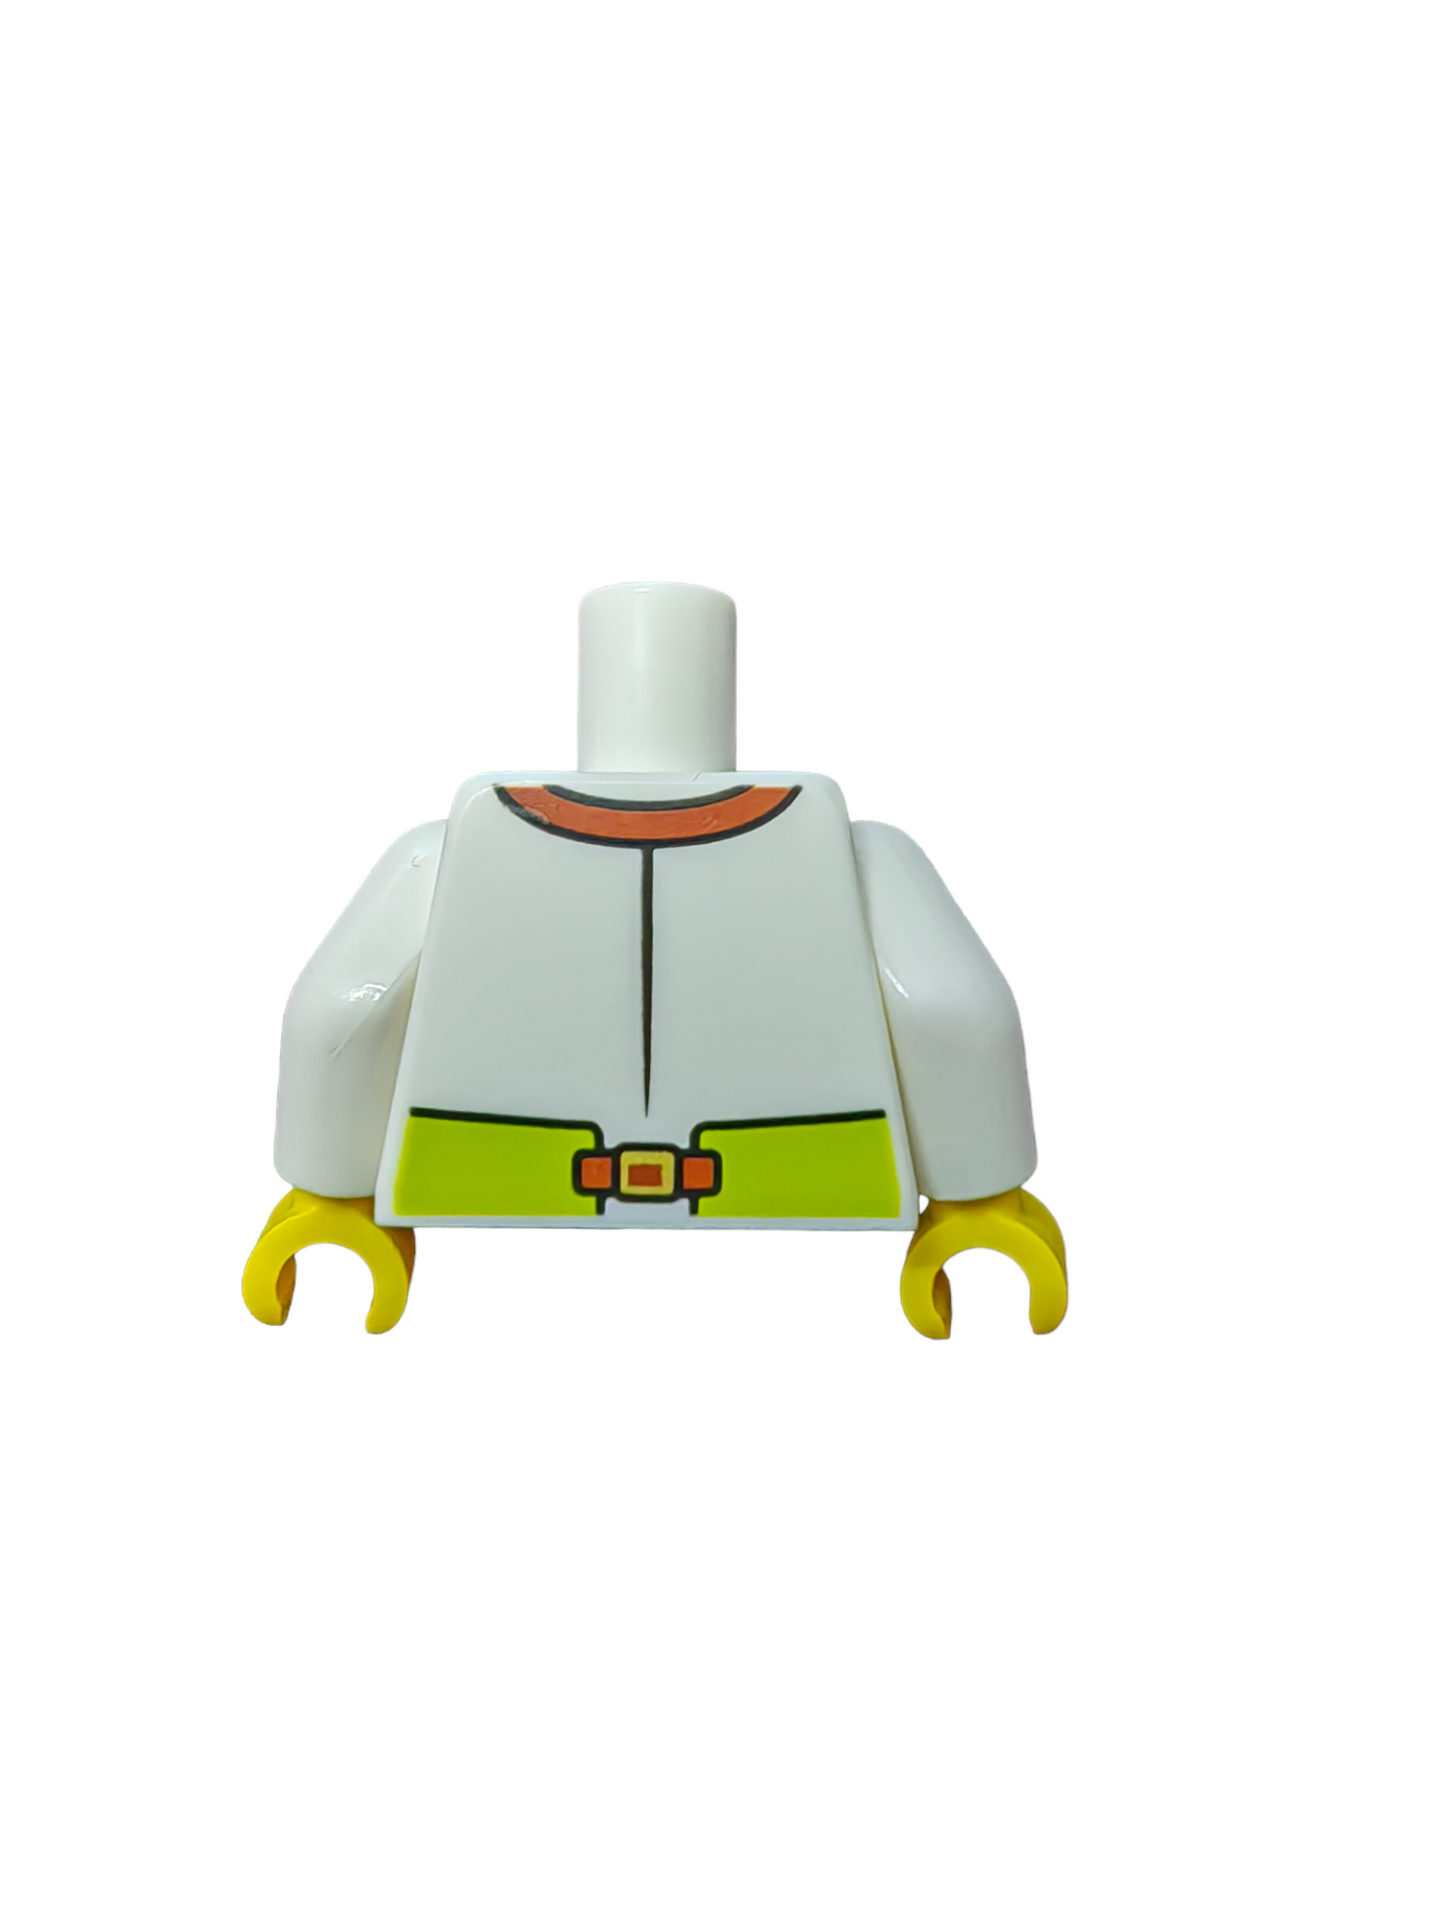 LEGO Torso, White Shirt and Lime Apron with a Reddish Brown Pocket - UB1098